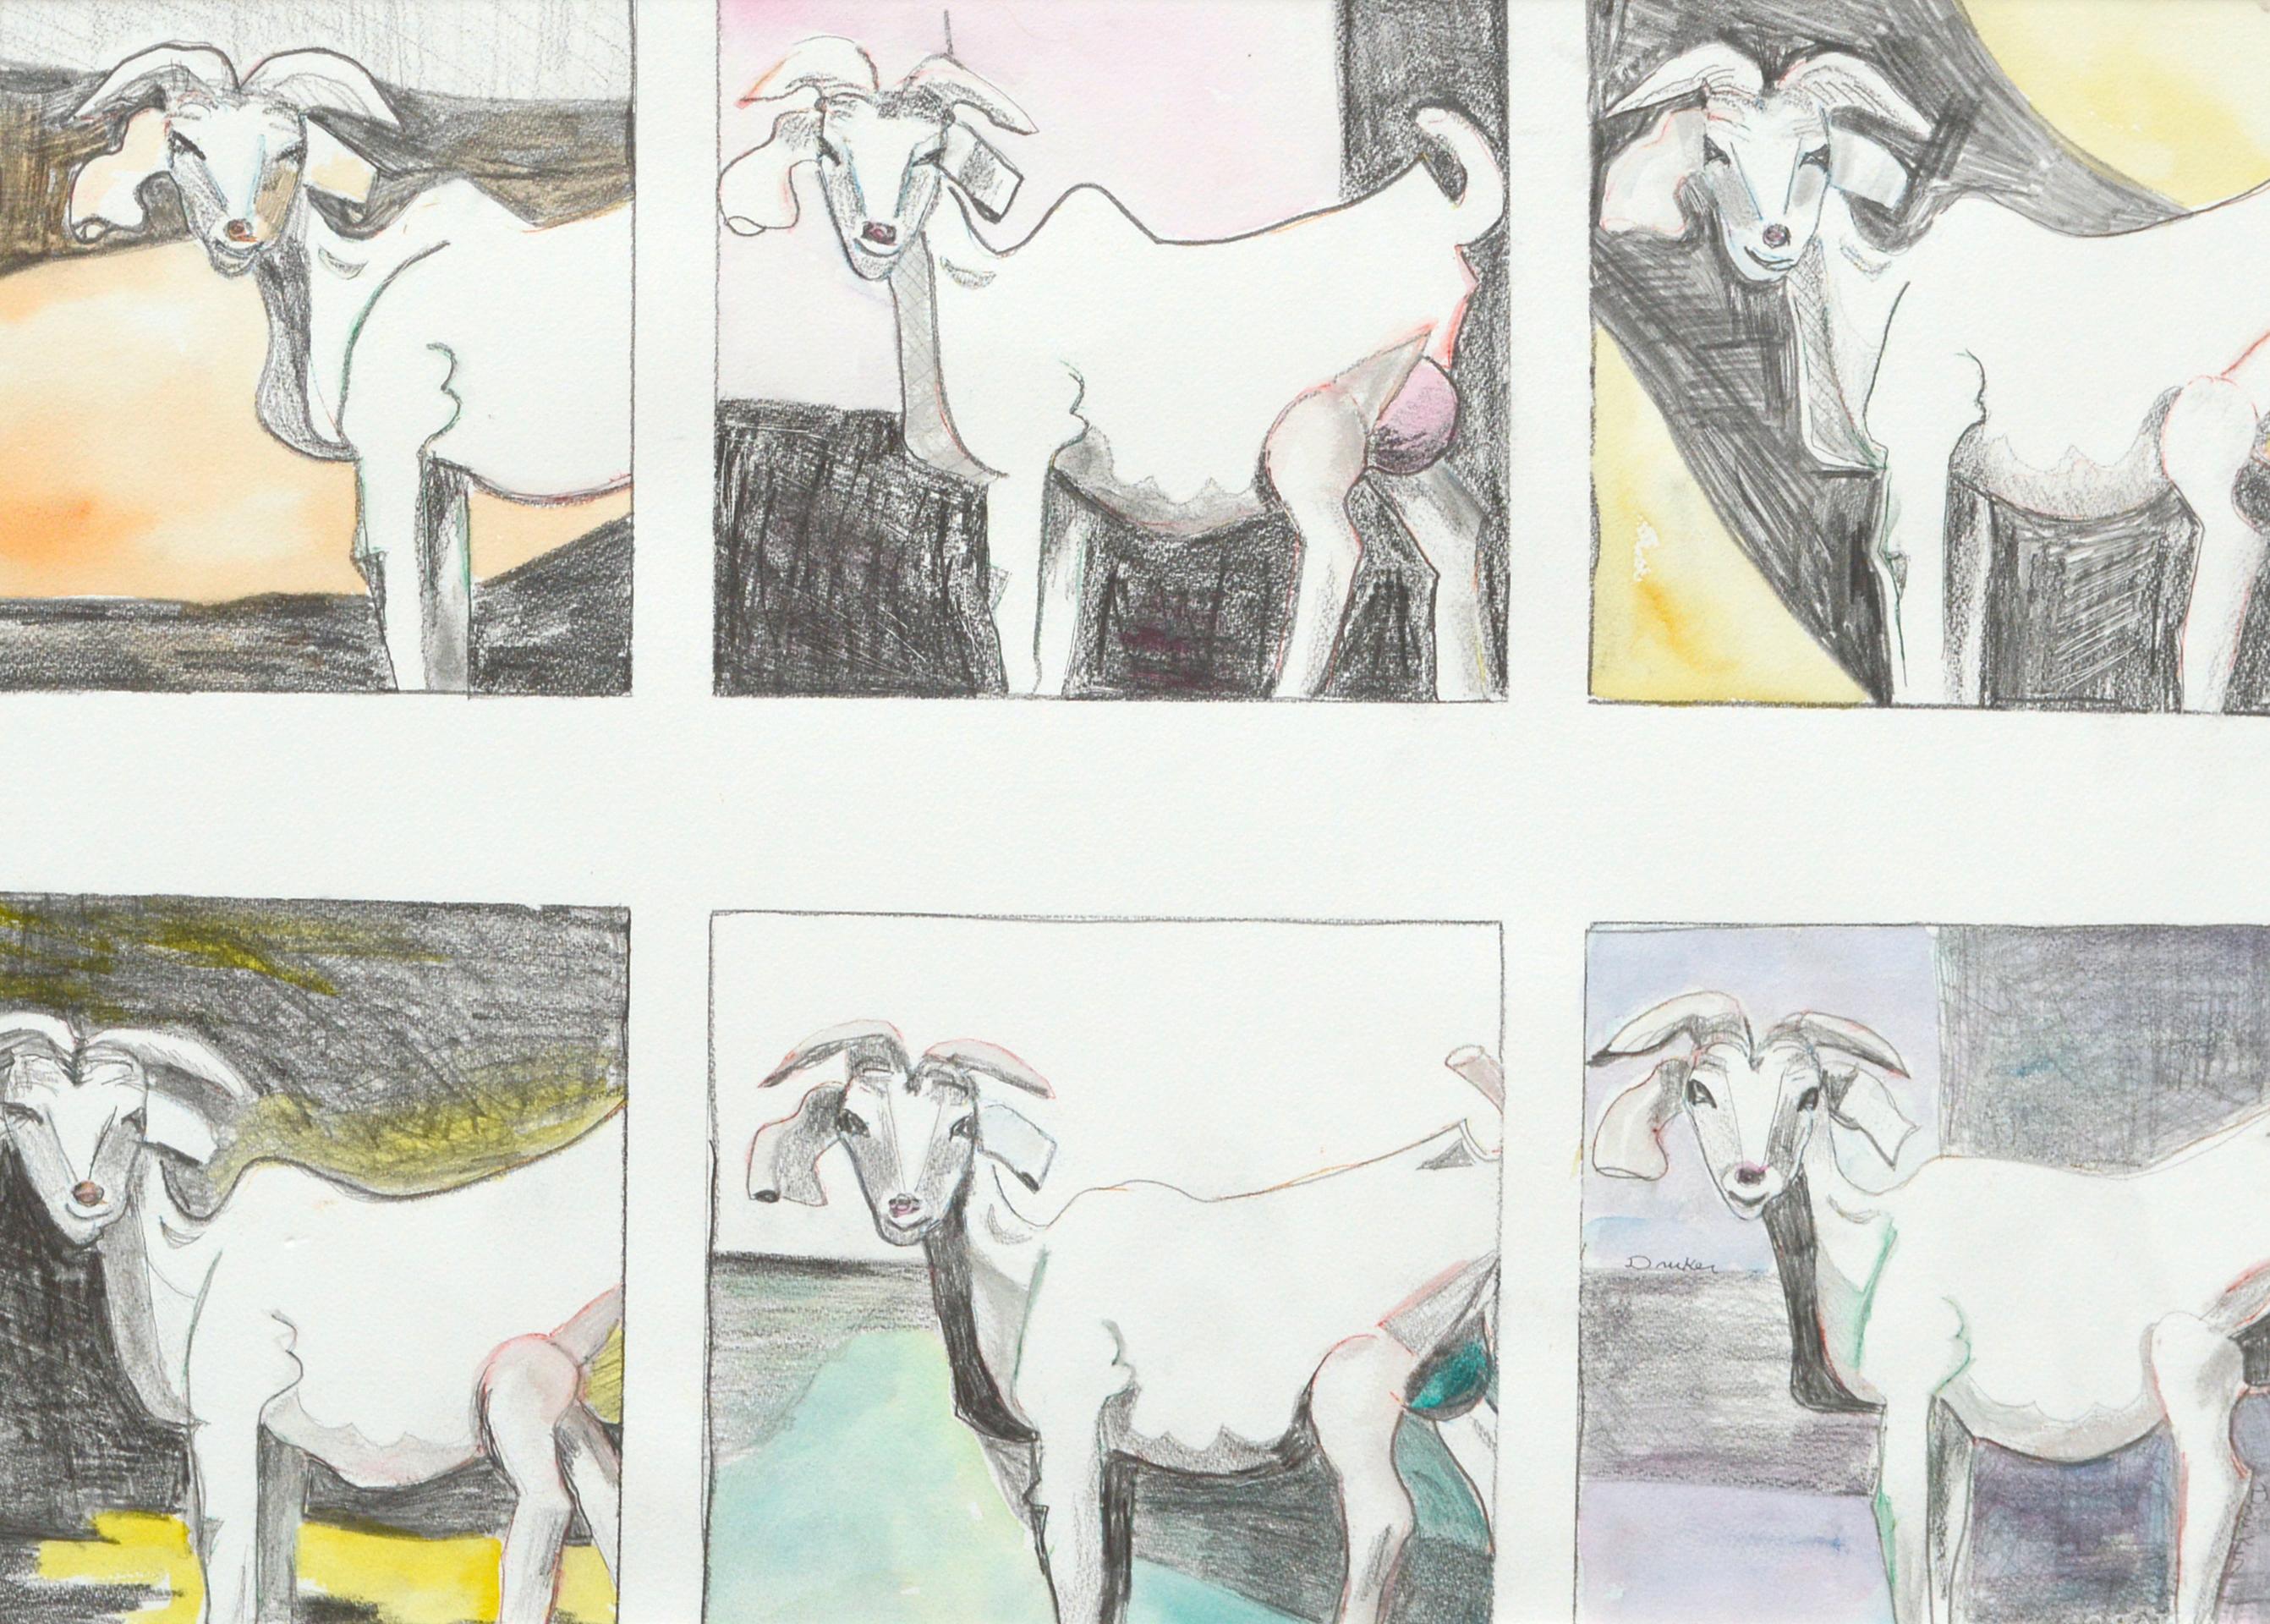 Six chèvres, série de portraits modernistes d'animaux chèvres  - Art de Karen Druker